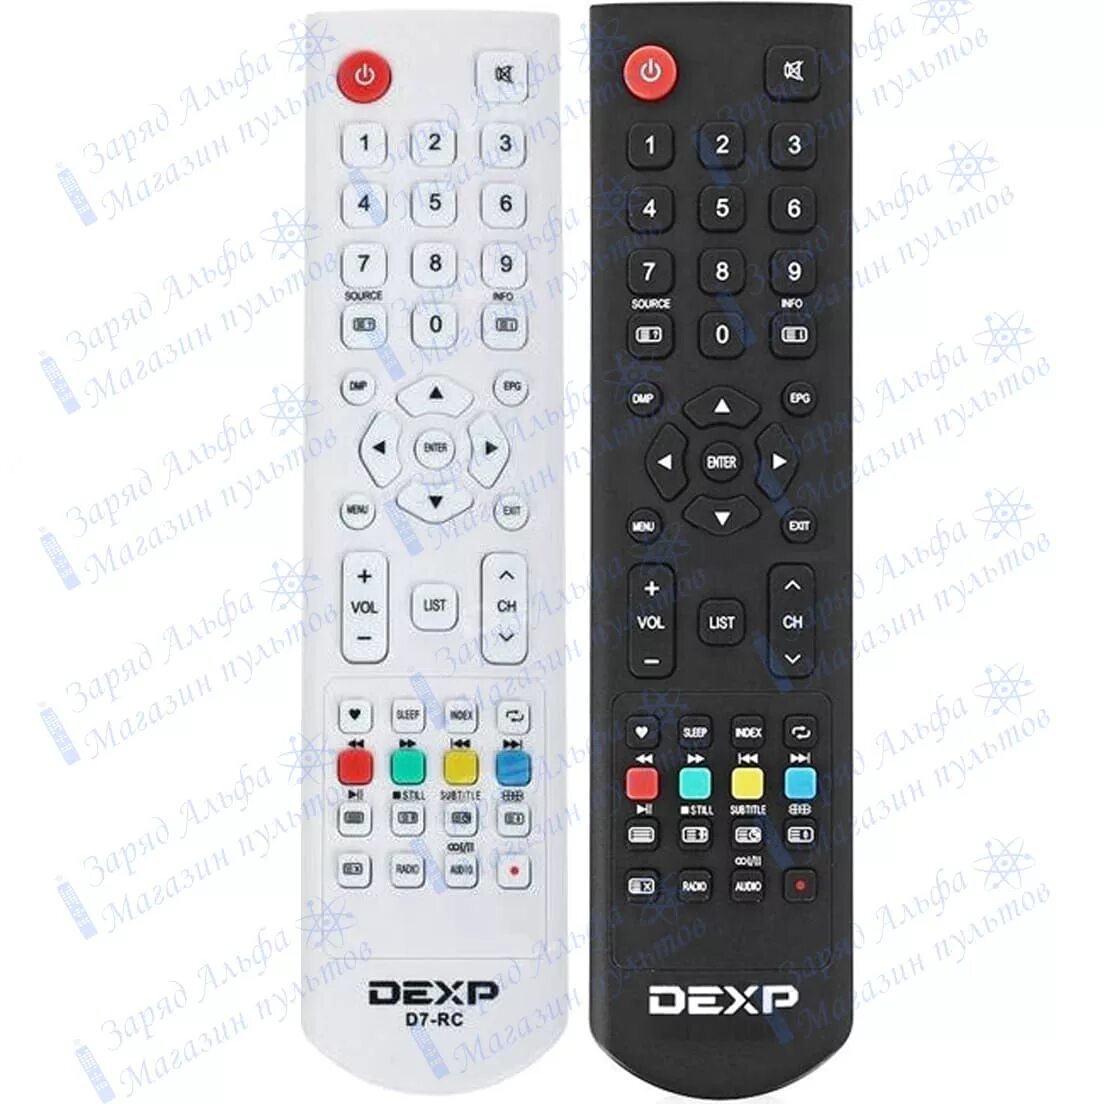 Пульт для телевизора DEXP d7-RC. Пульт DEXP f32d7200. Пульт для DEXP 32a7000. H32f7100c пульт для телевизора DEXP.